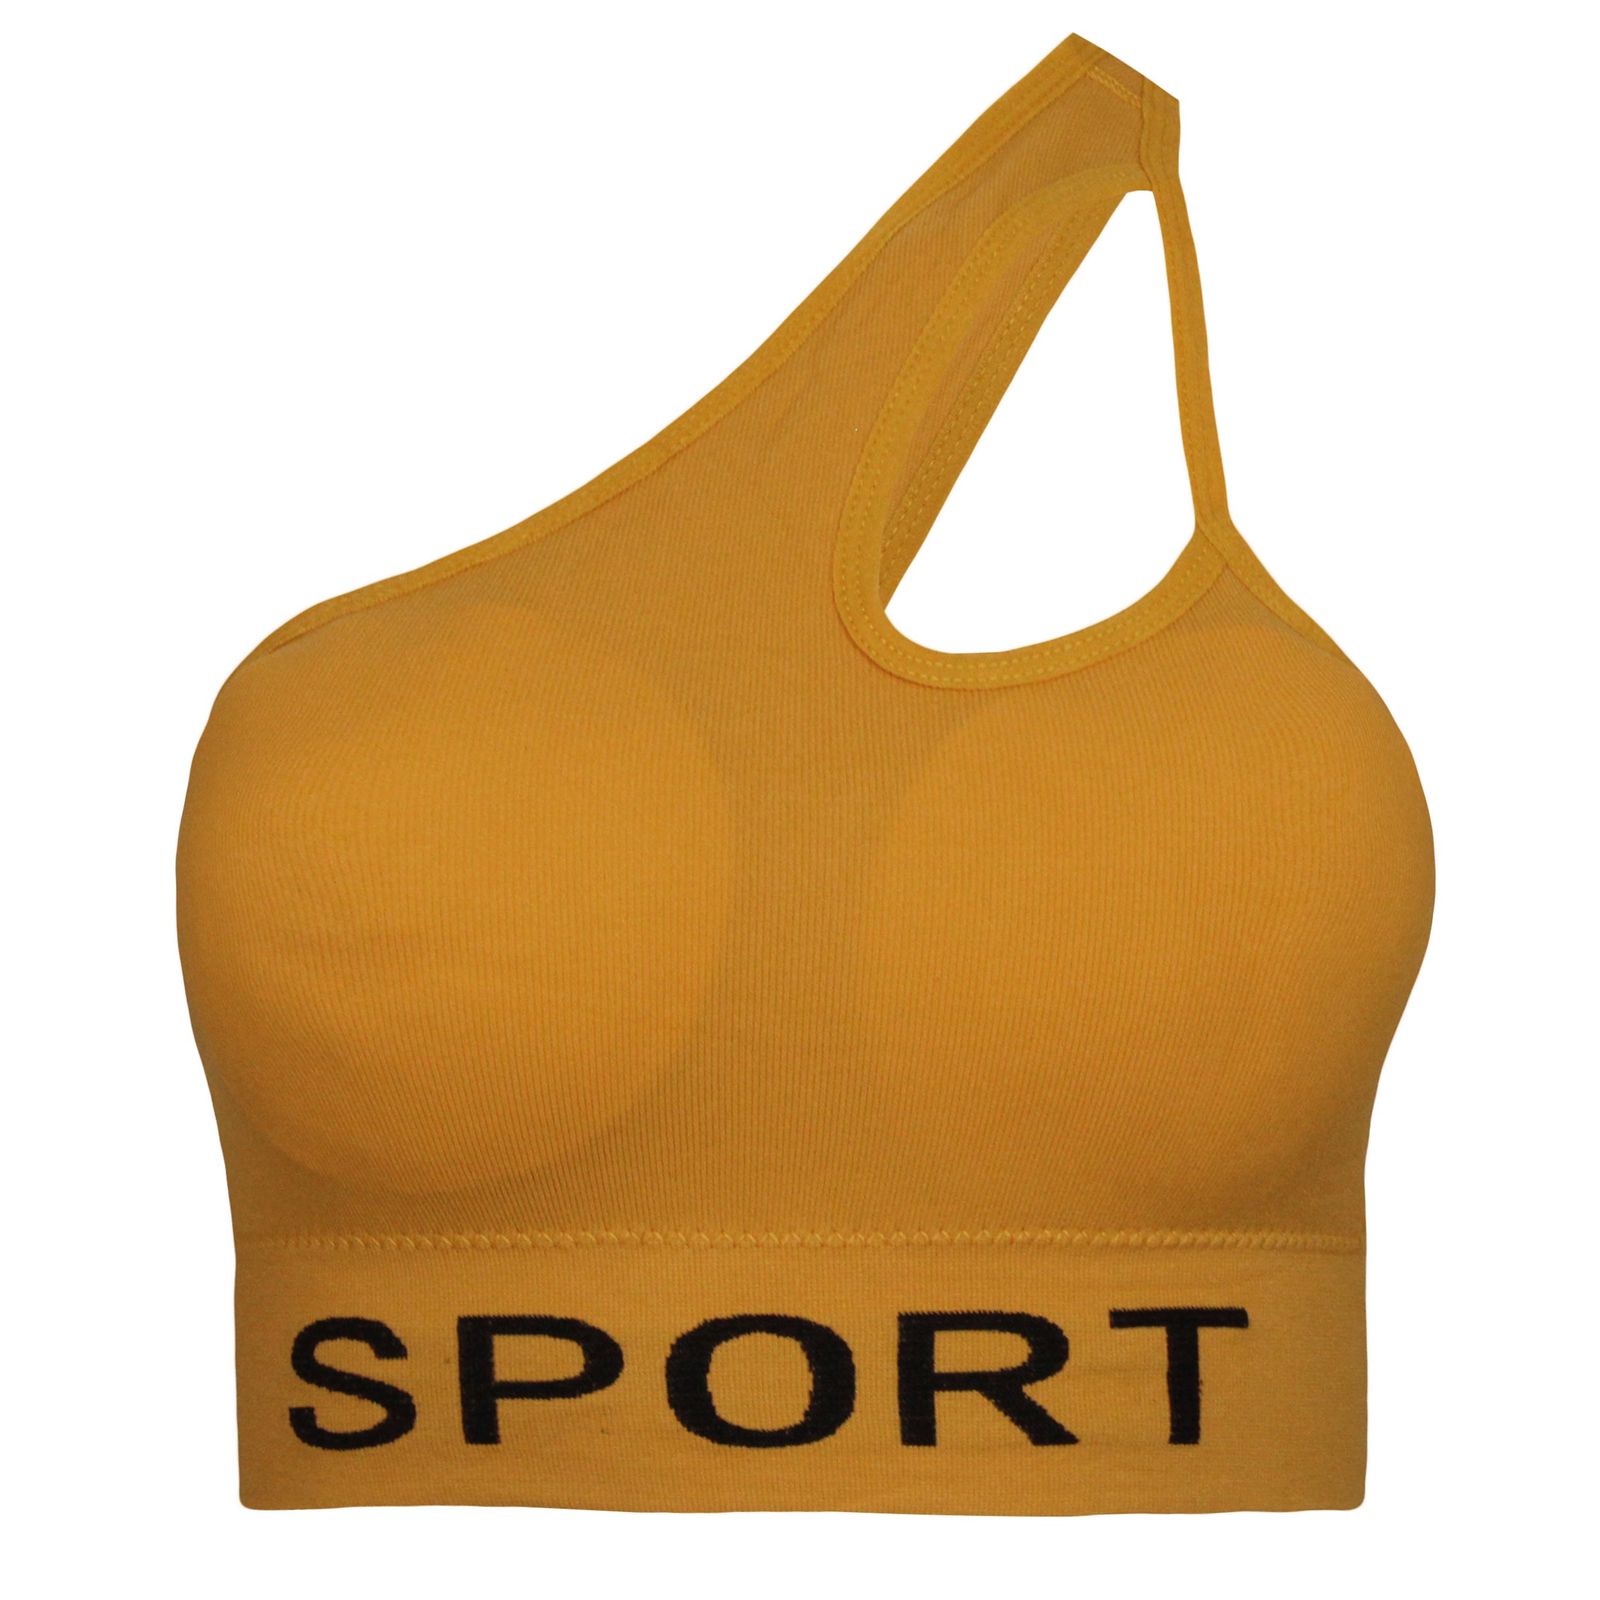 ست نیم تنه و شلوارک ورزشی زنانه ماییلدا مدل 4465 رنگ خردلی -  - 2